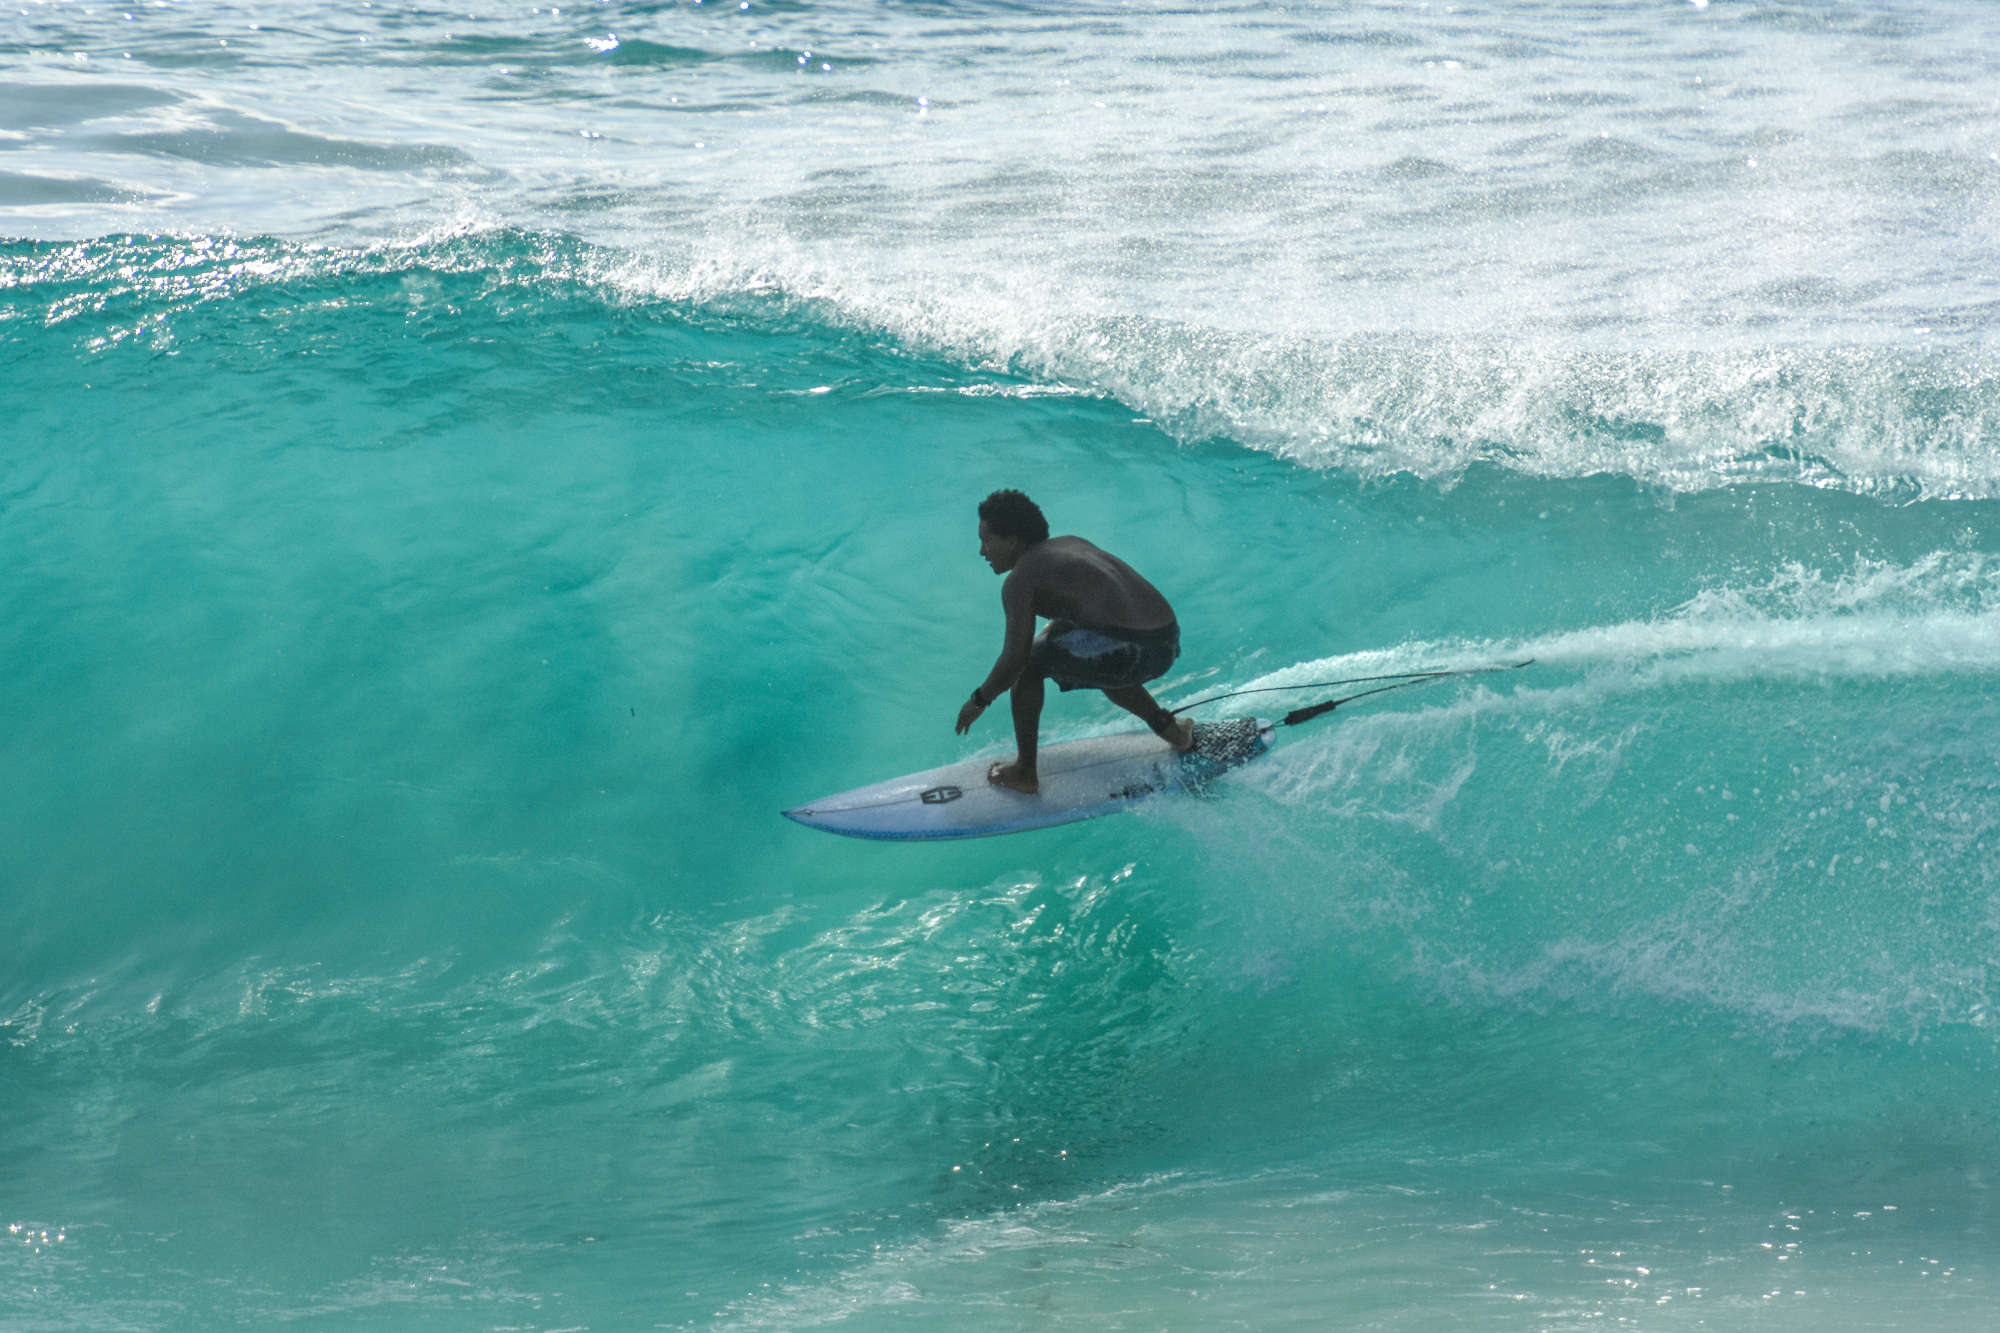 Conhece a história de Sung Min Cho aka Mini, o primeiro surfista profissional moçambicano que sonha com o topo mundial